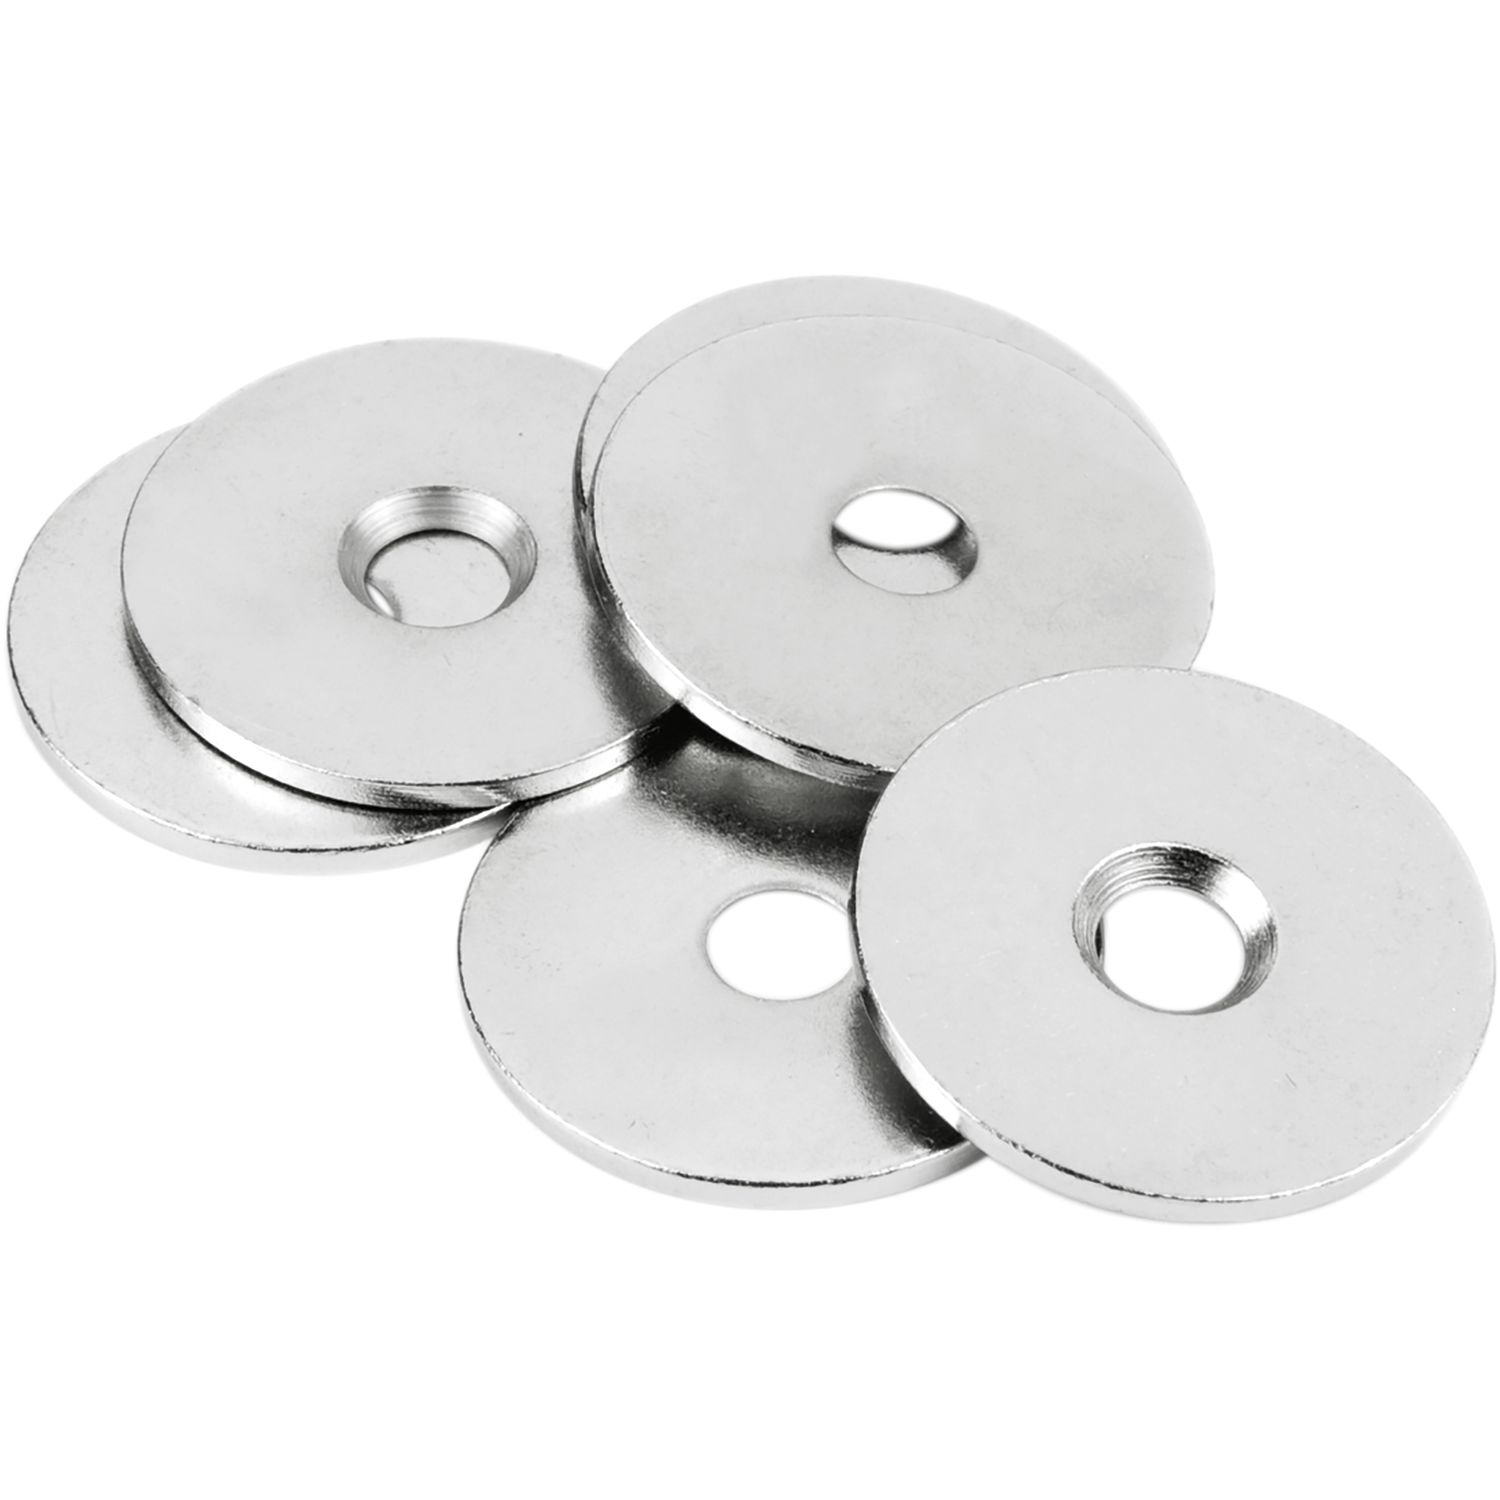 Disco de metal con agujero avellanado, contraparte de imanes, bases de tornillos, placa de metal, superficies para tornillos de imanes discos de metal, copas, discos y arandelas